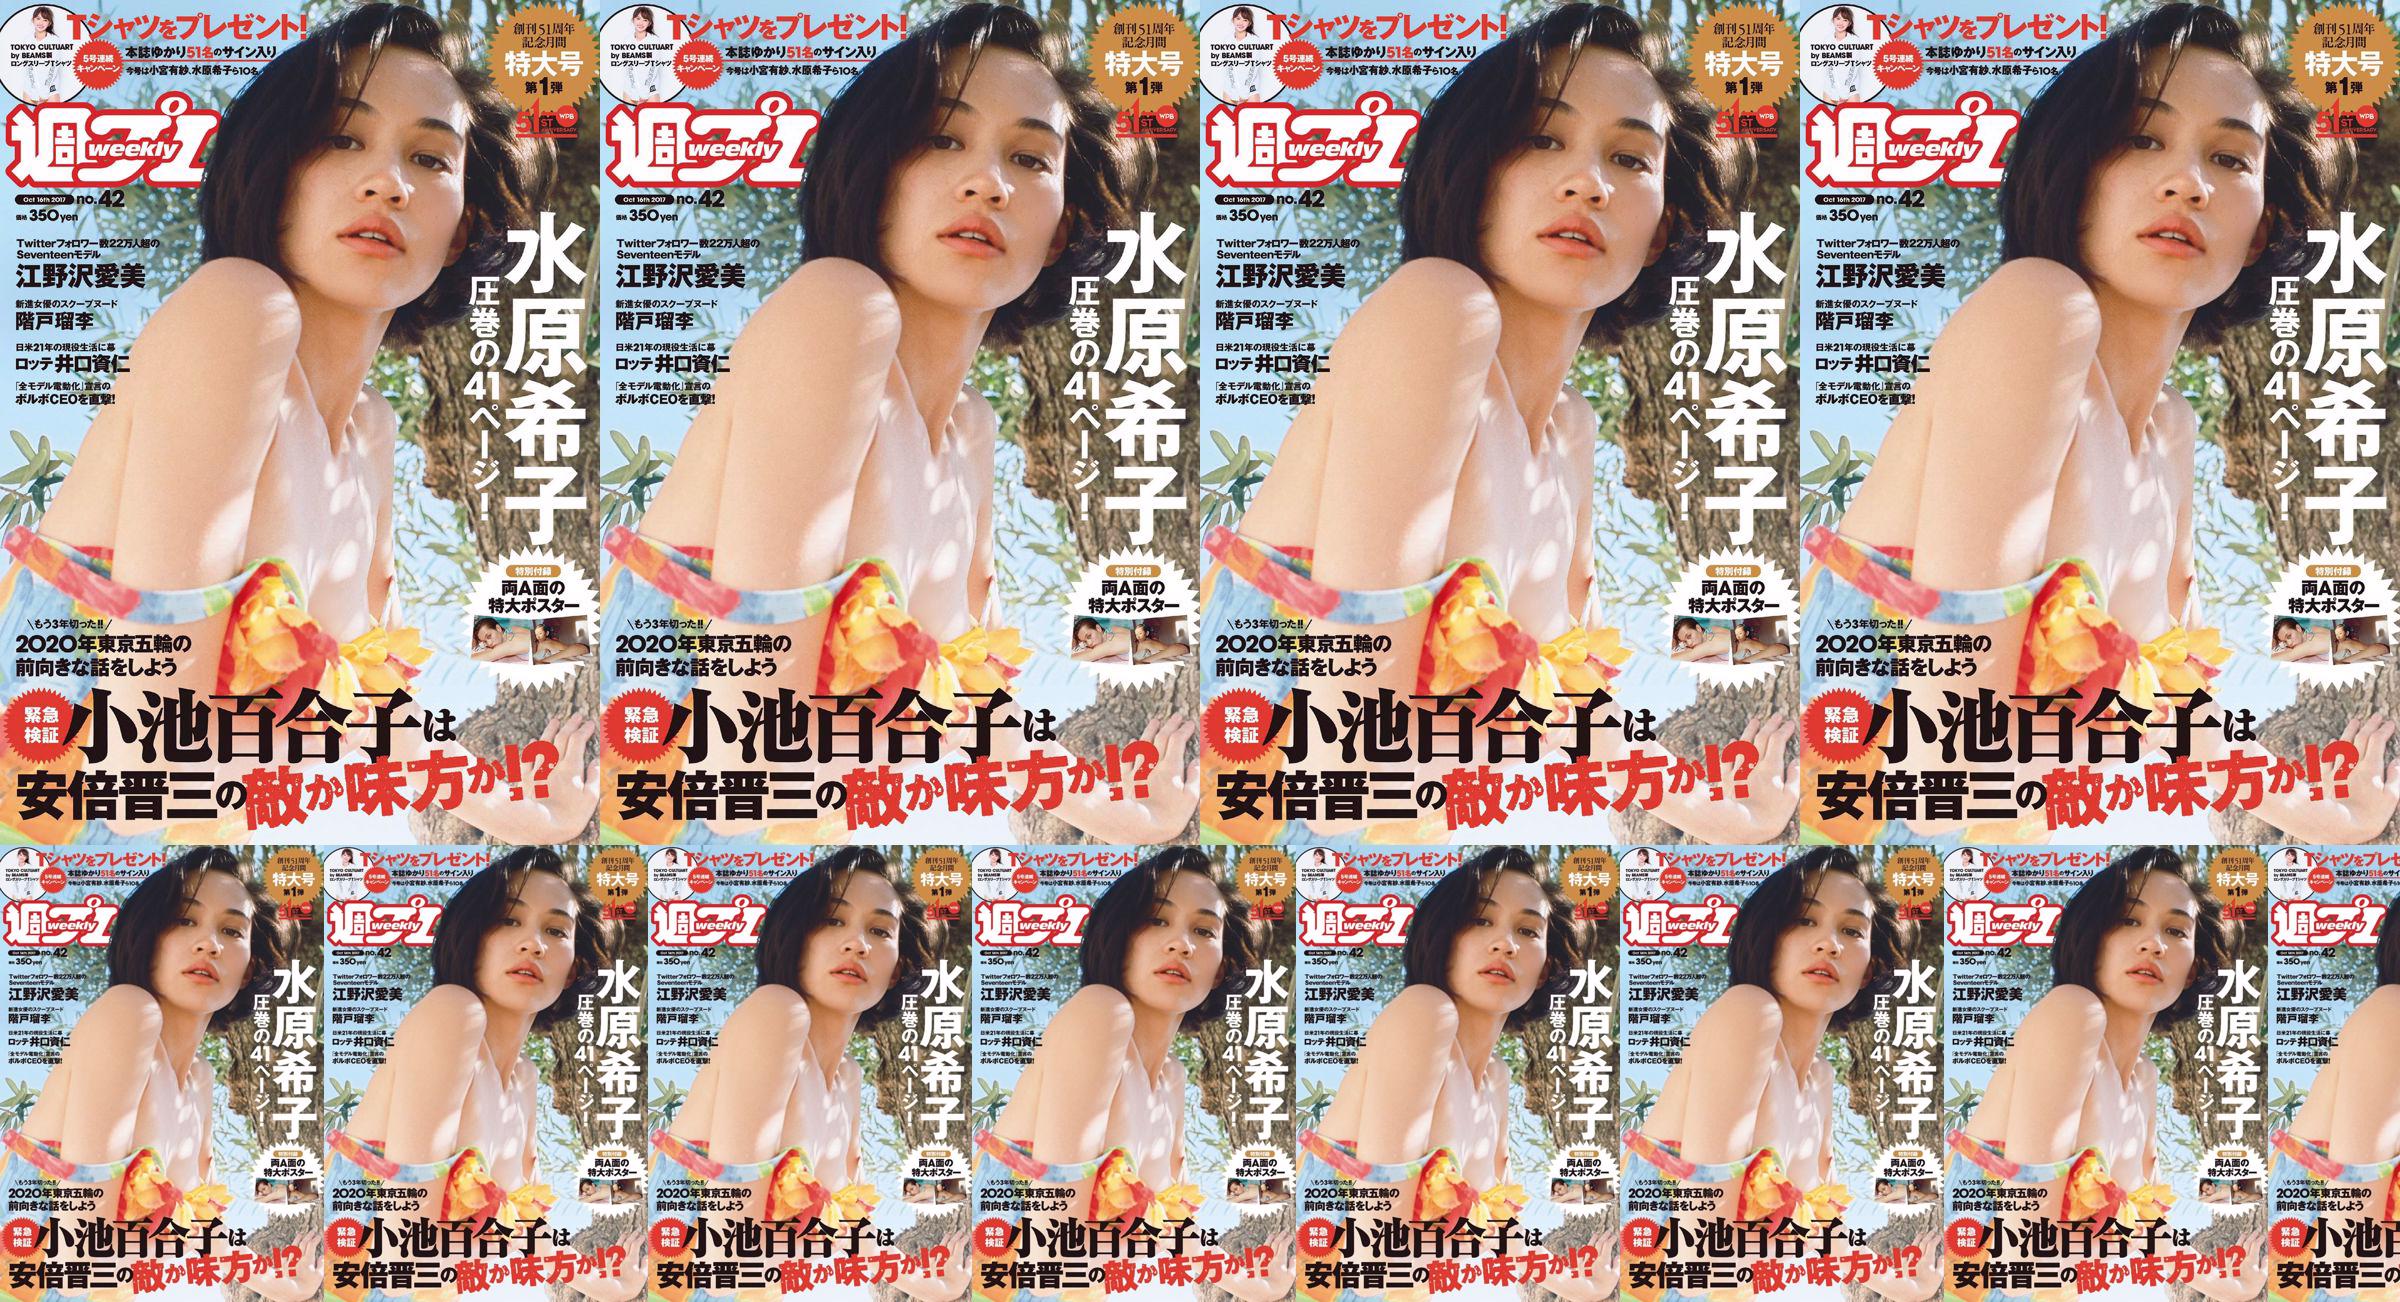 Kiko Mizuhara Manami Enosawa Serina Fukui Miu Nakamura Ruri Shinato [Playboy semanal] 2017 No.42 Photo Magazine No.3e3e34 Página 20